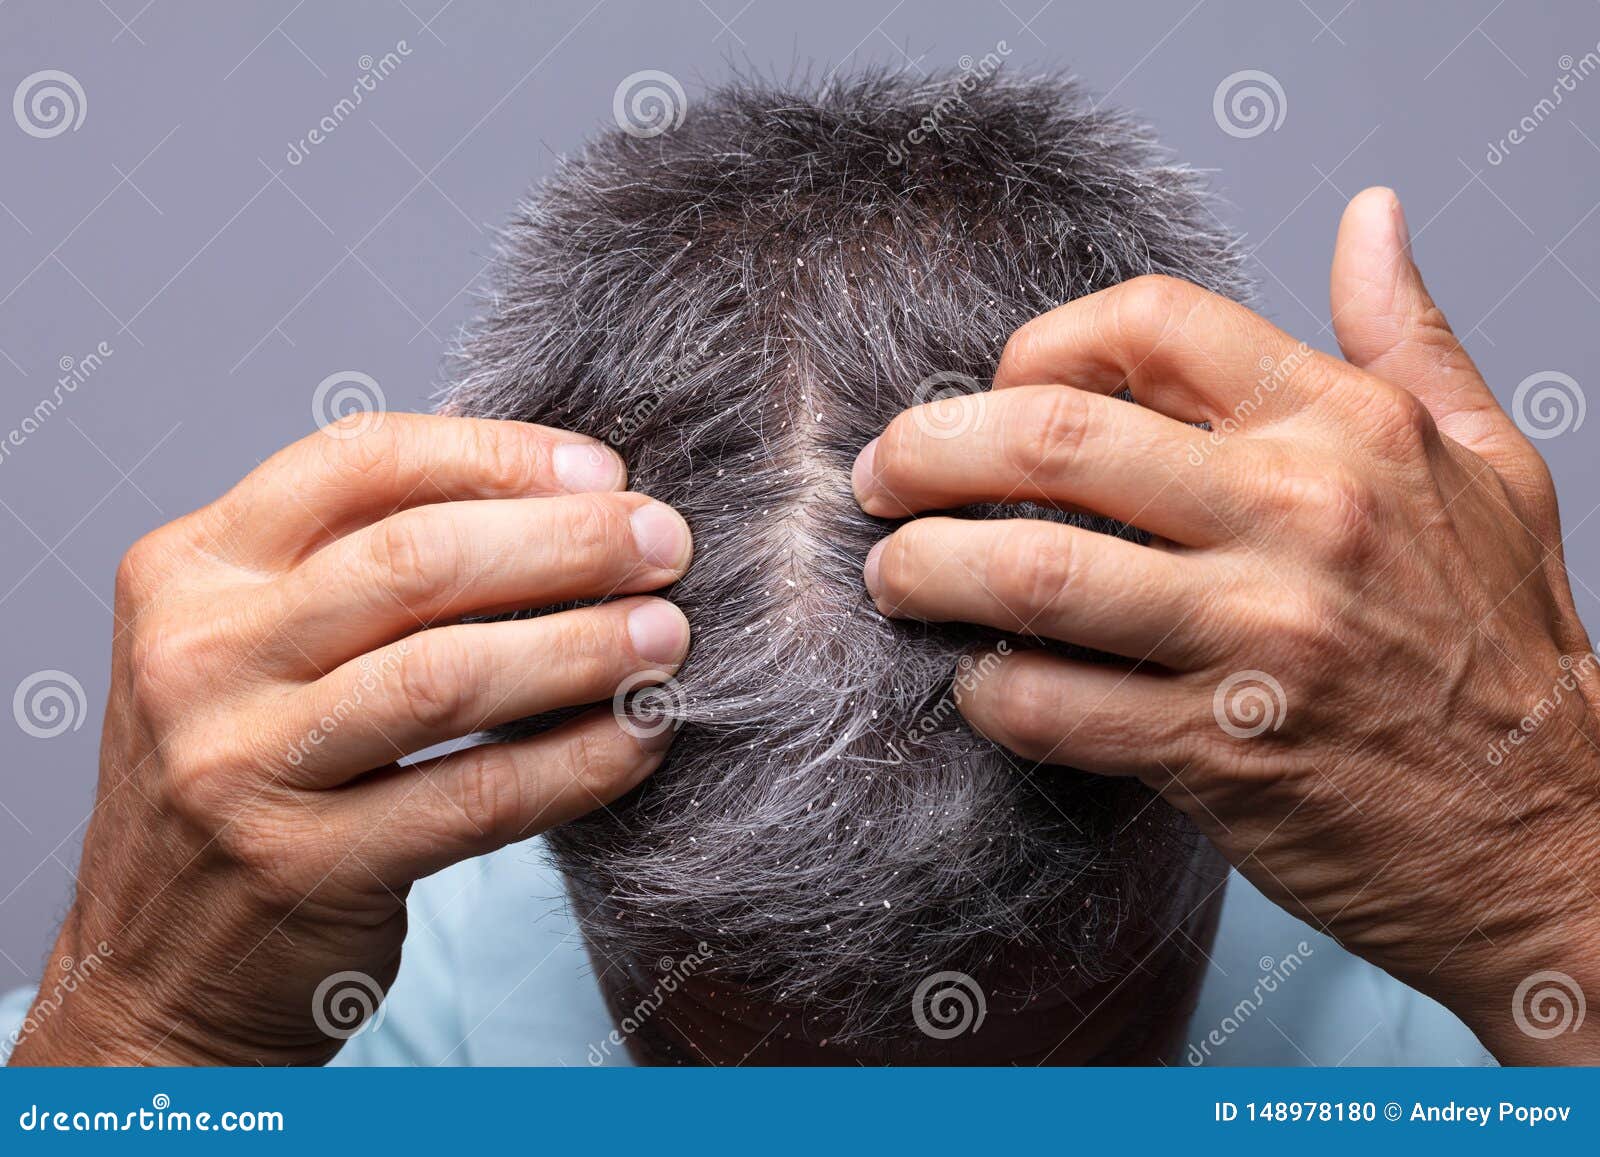 dandruff on man`s hair